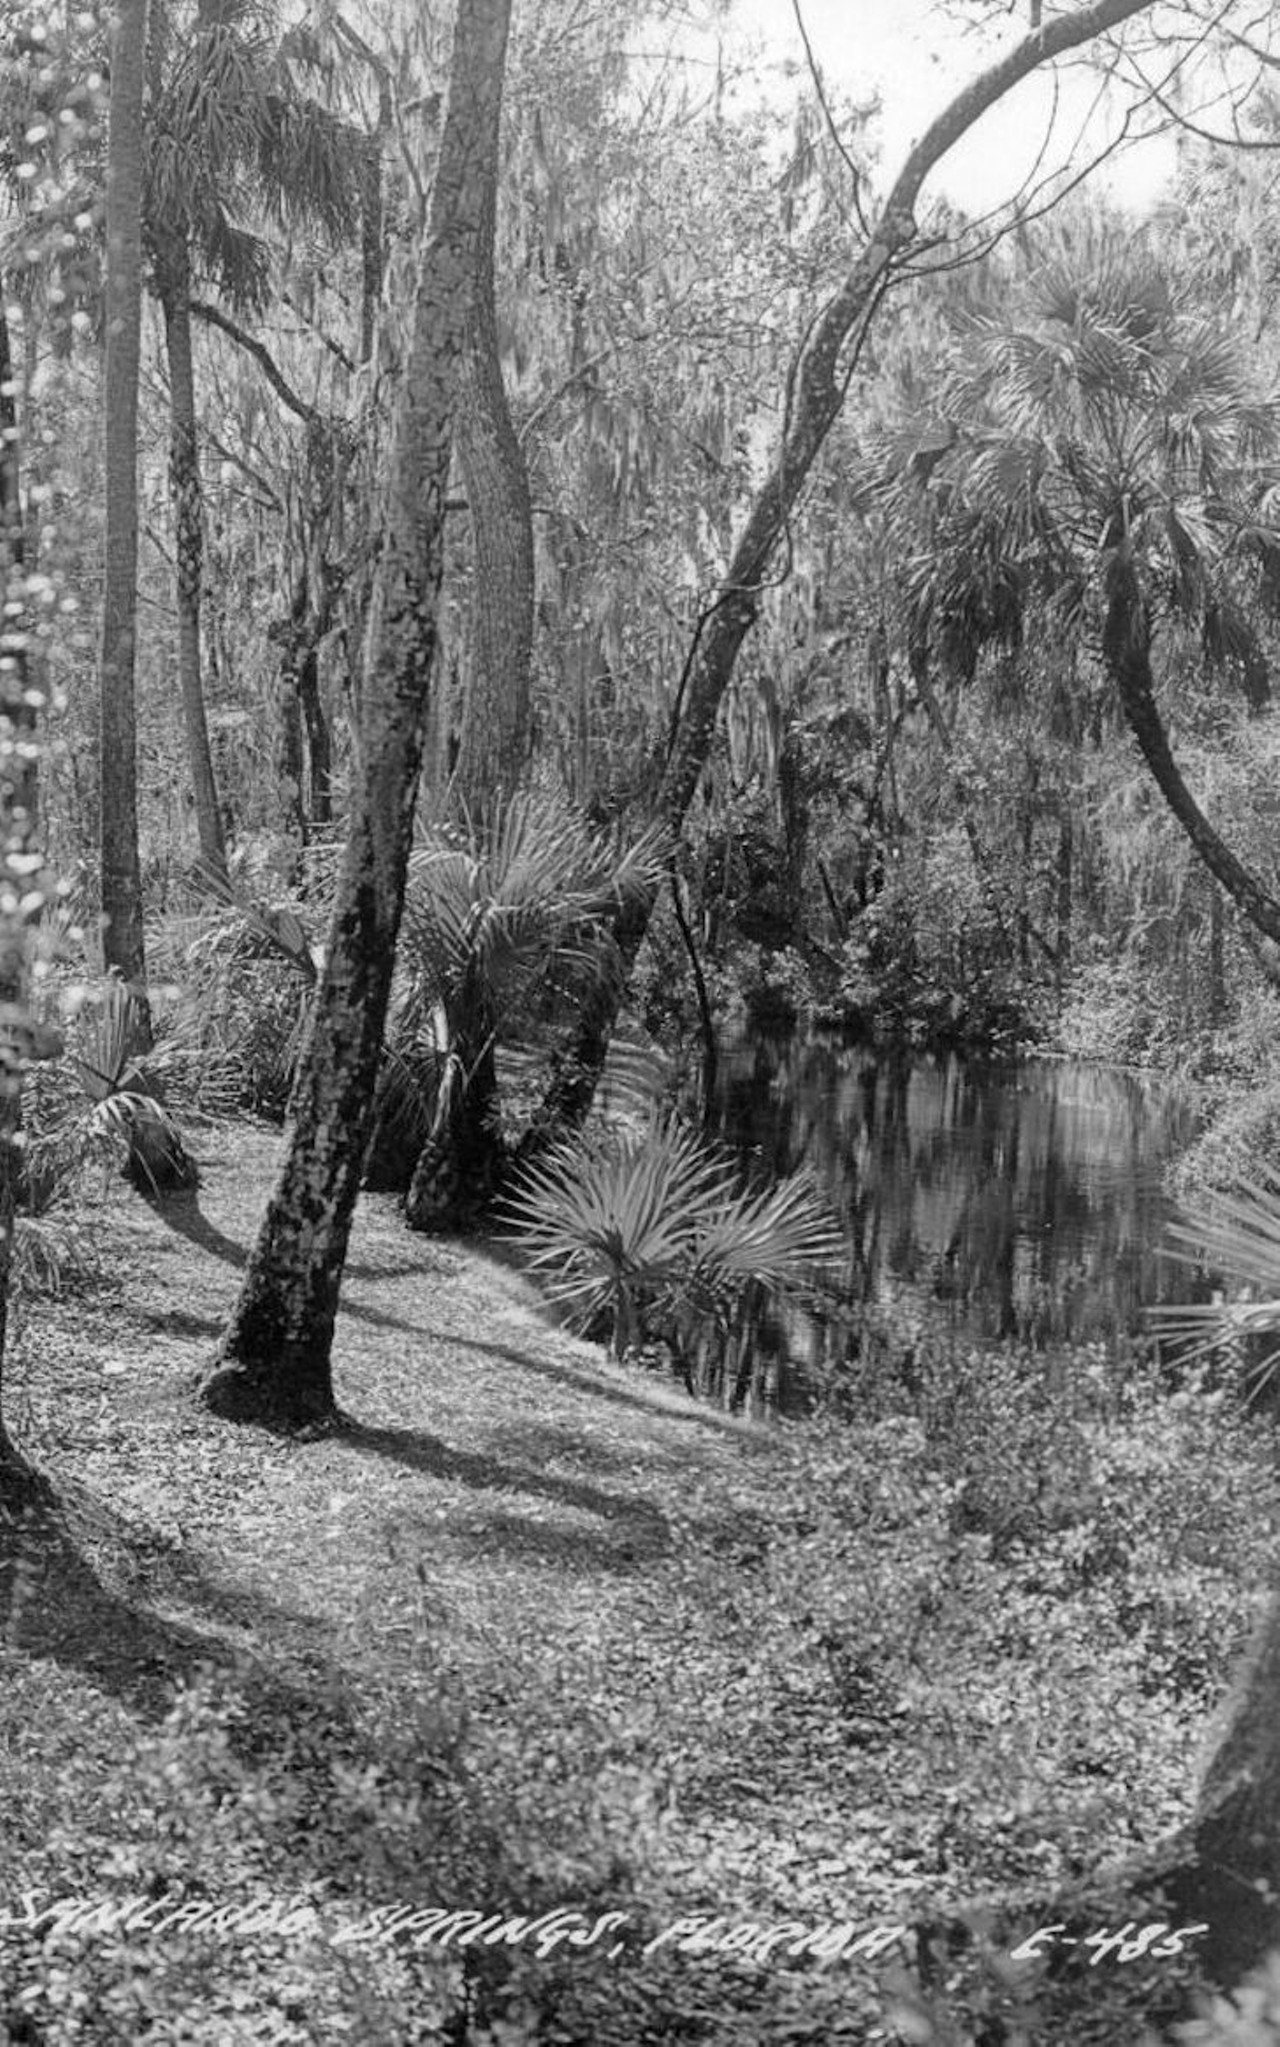 Sanlando Springs, Florida, circa 1940.